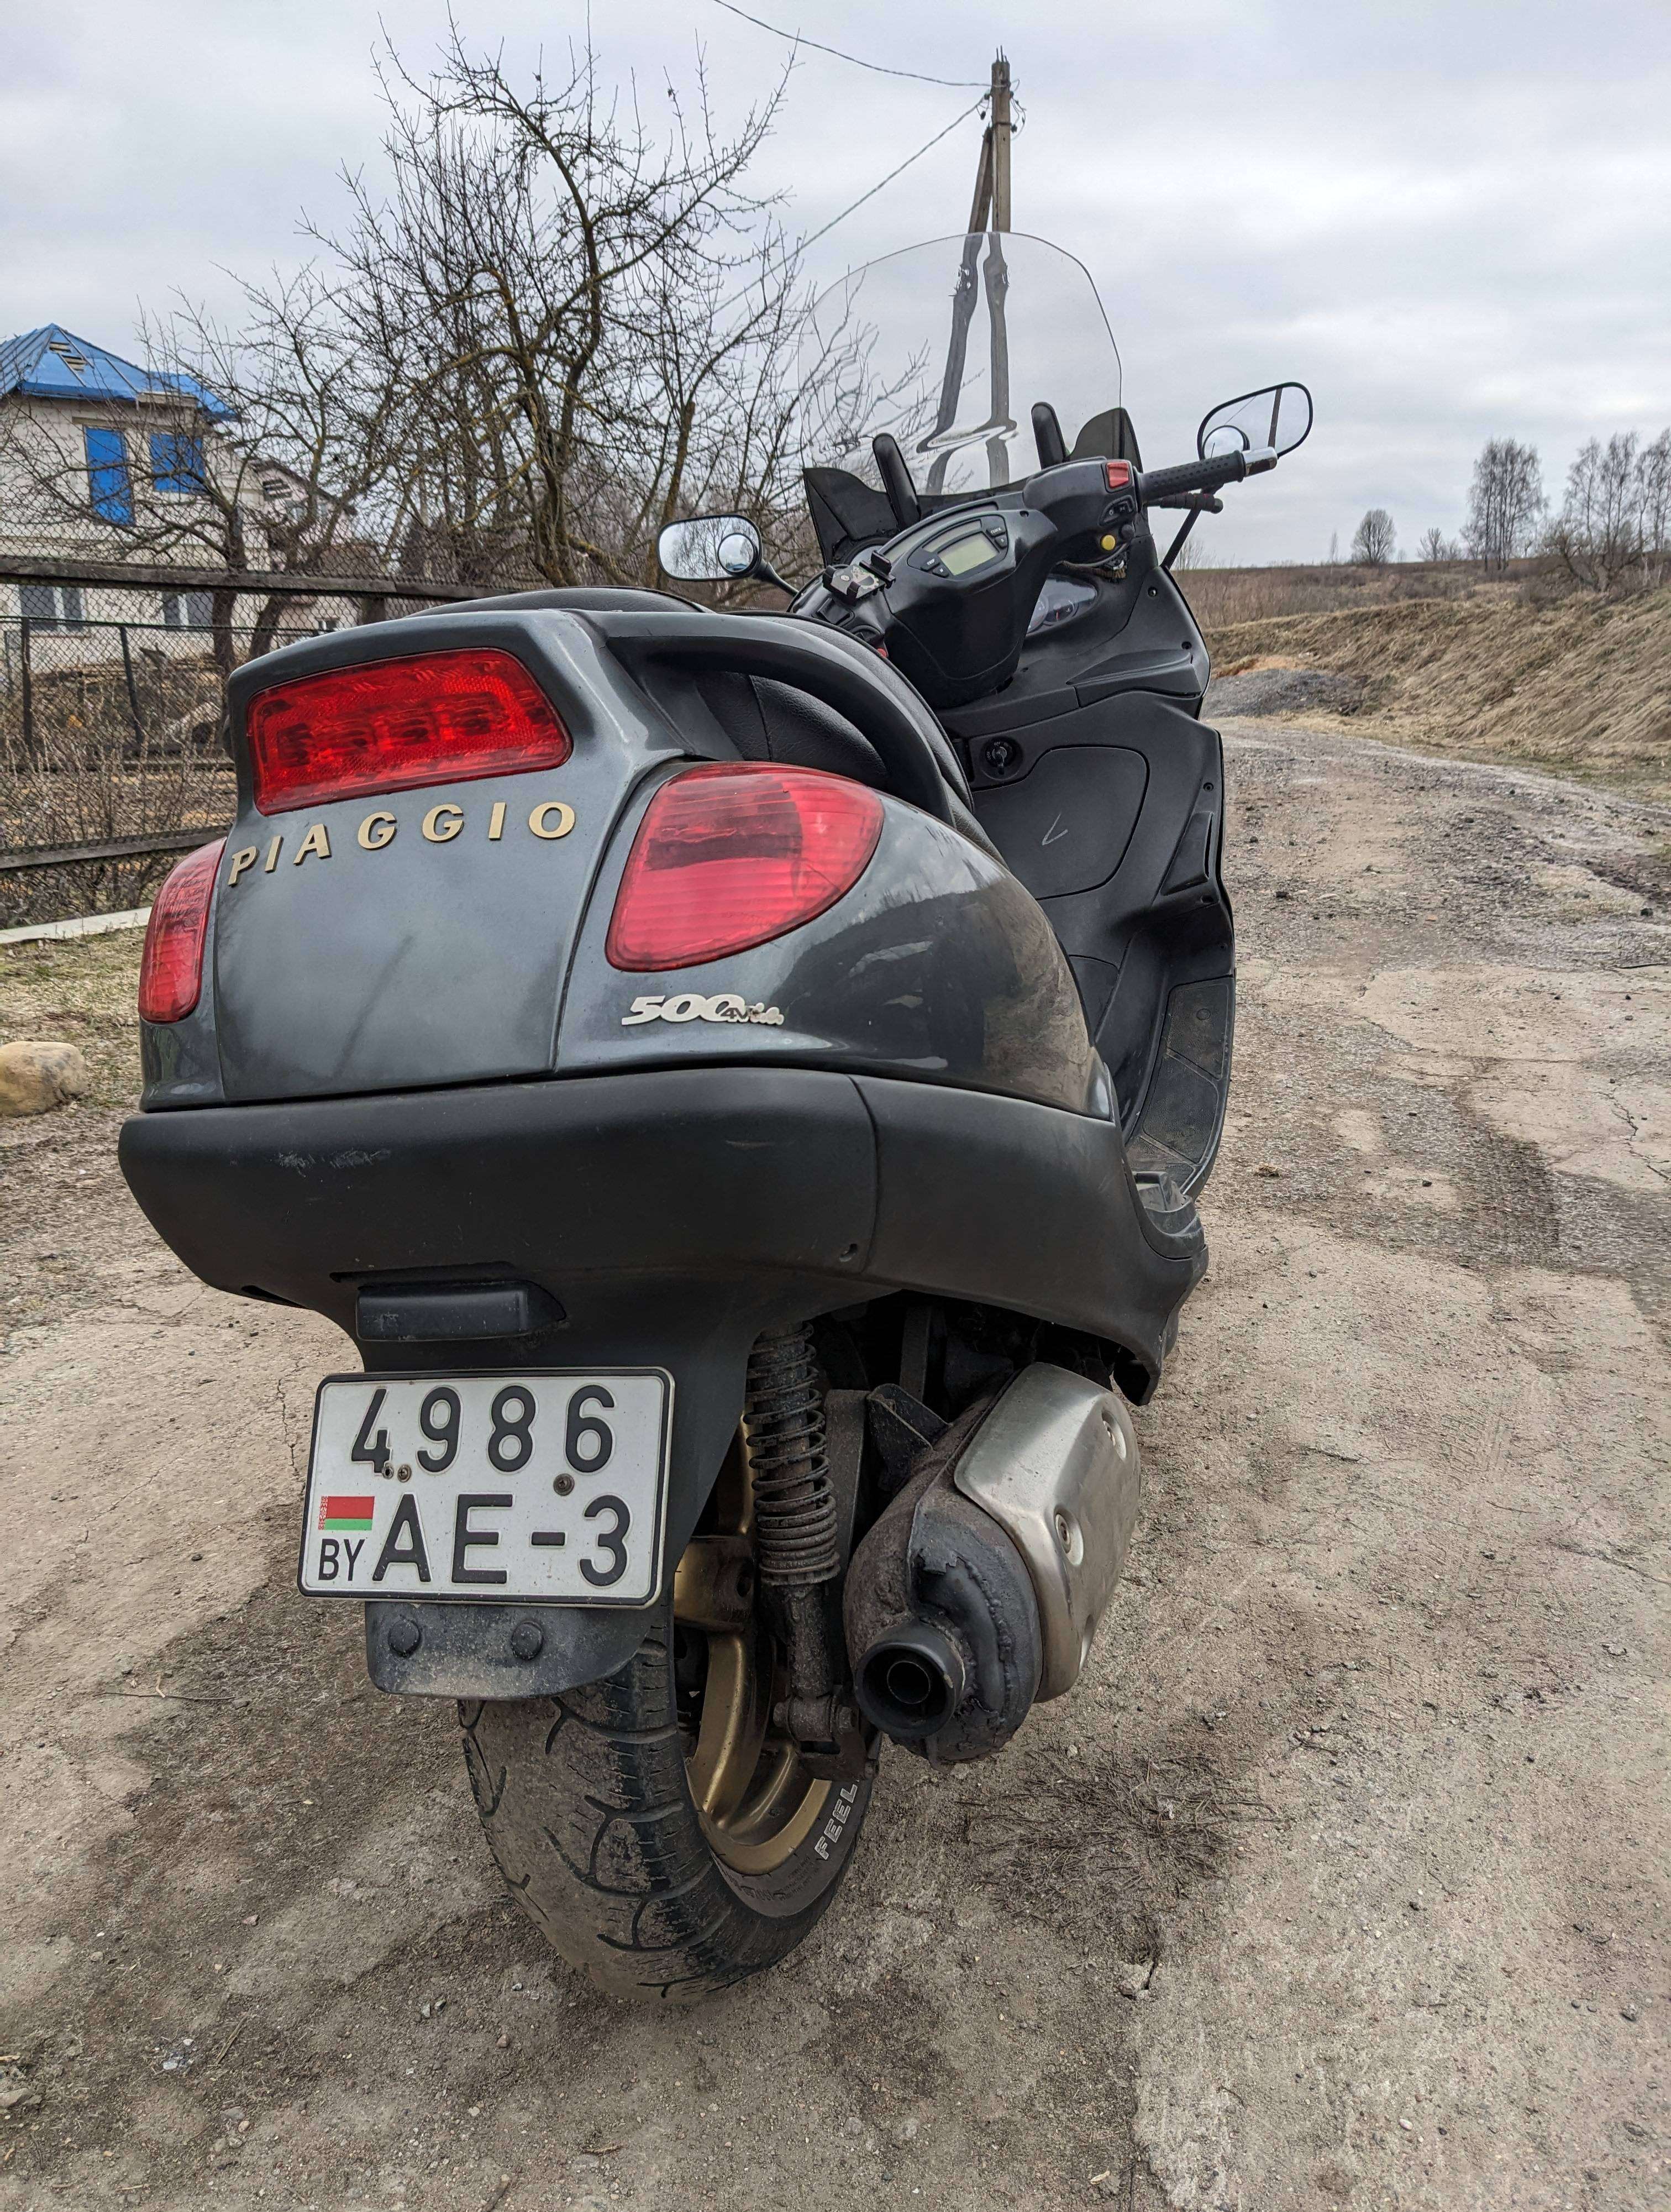 Купить скутер Piaggio в Беларуси в кредит - цены, характеристики, фото.